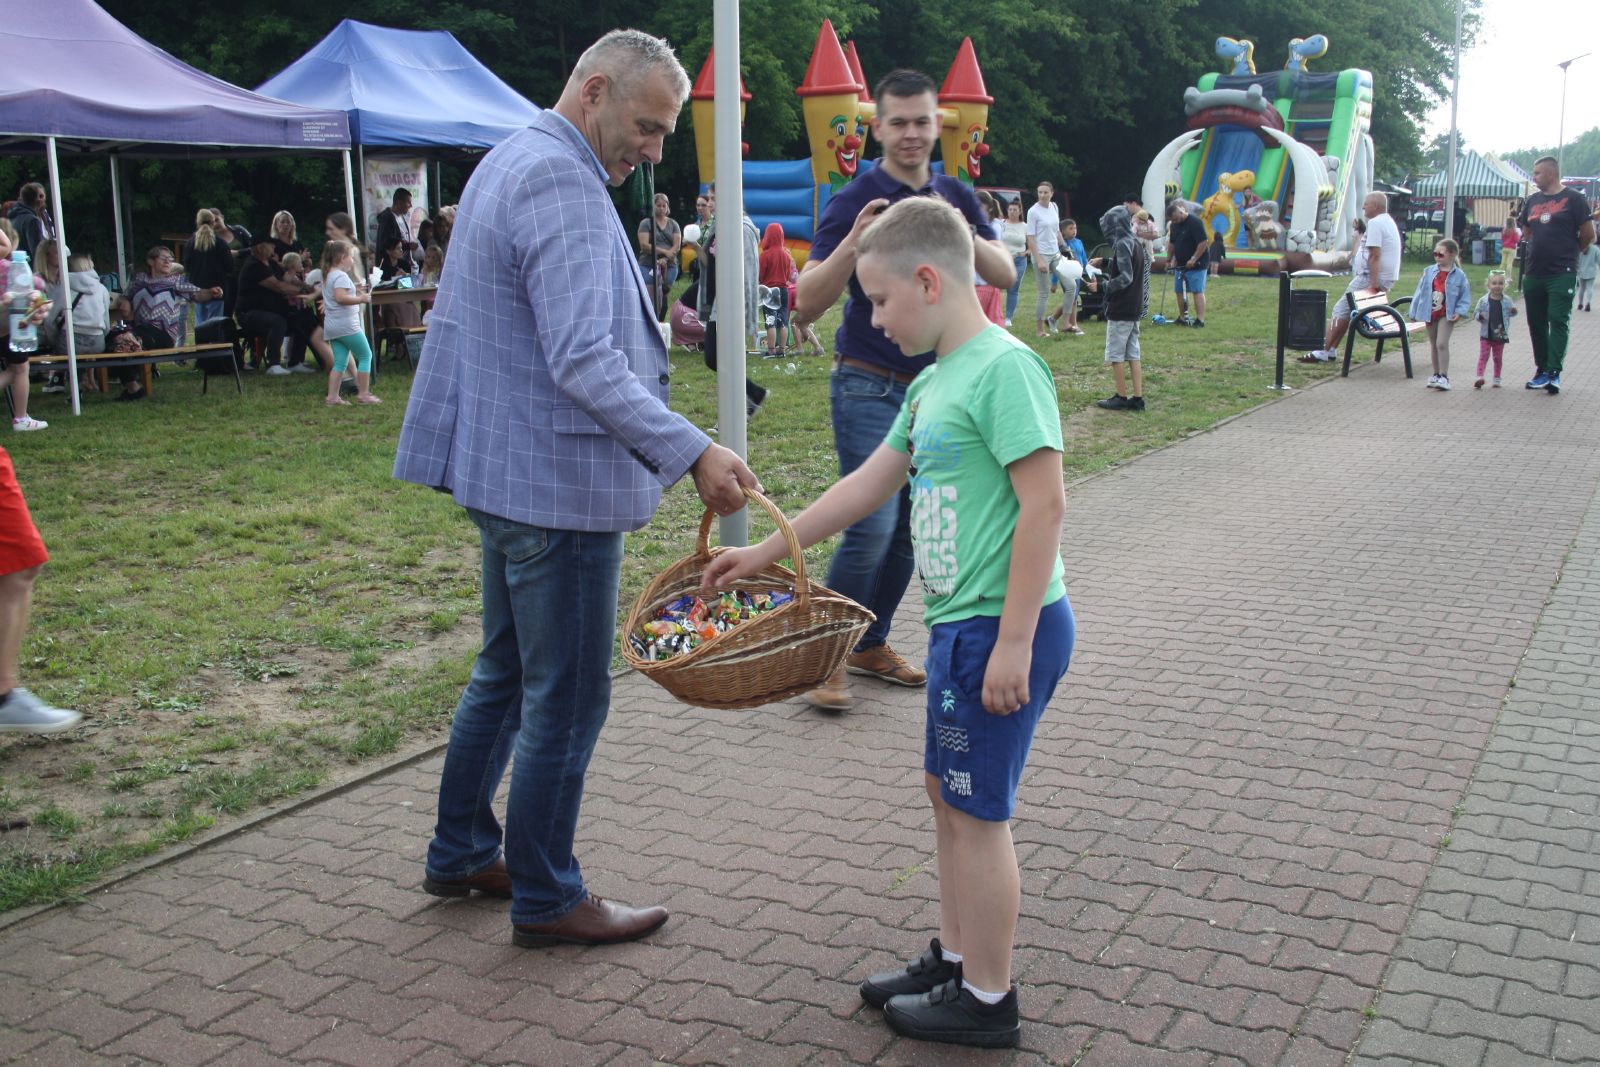 Burmistrz Andrzej Bracha rozdaje cukierki z koszyka wiklinowego, po prawej stronie chłopiec